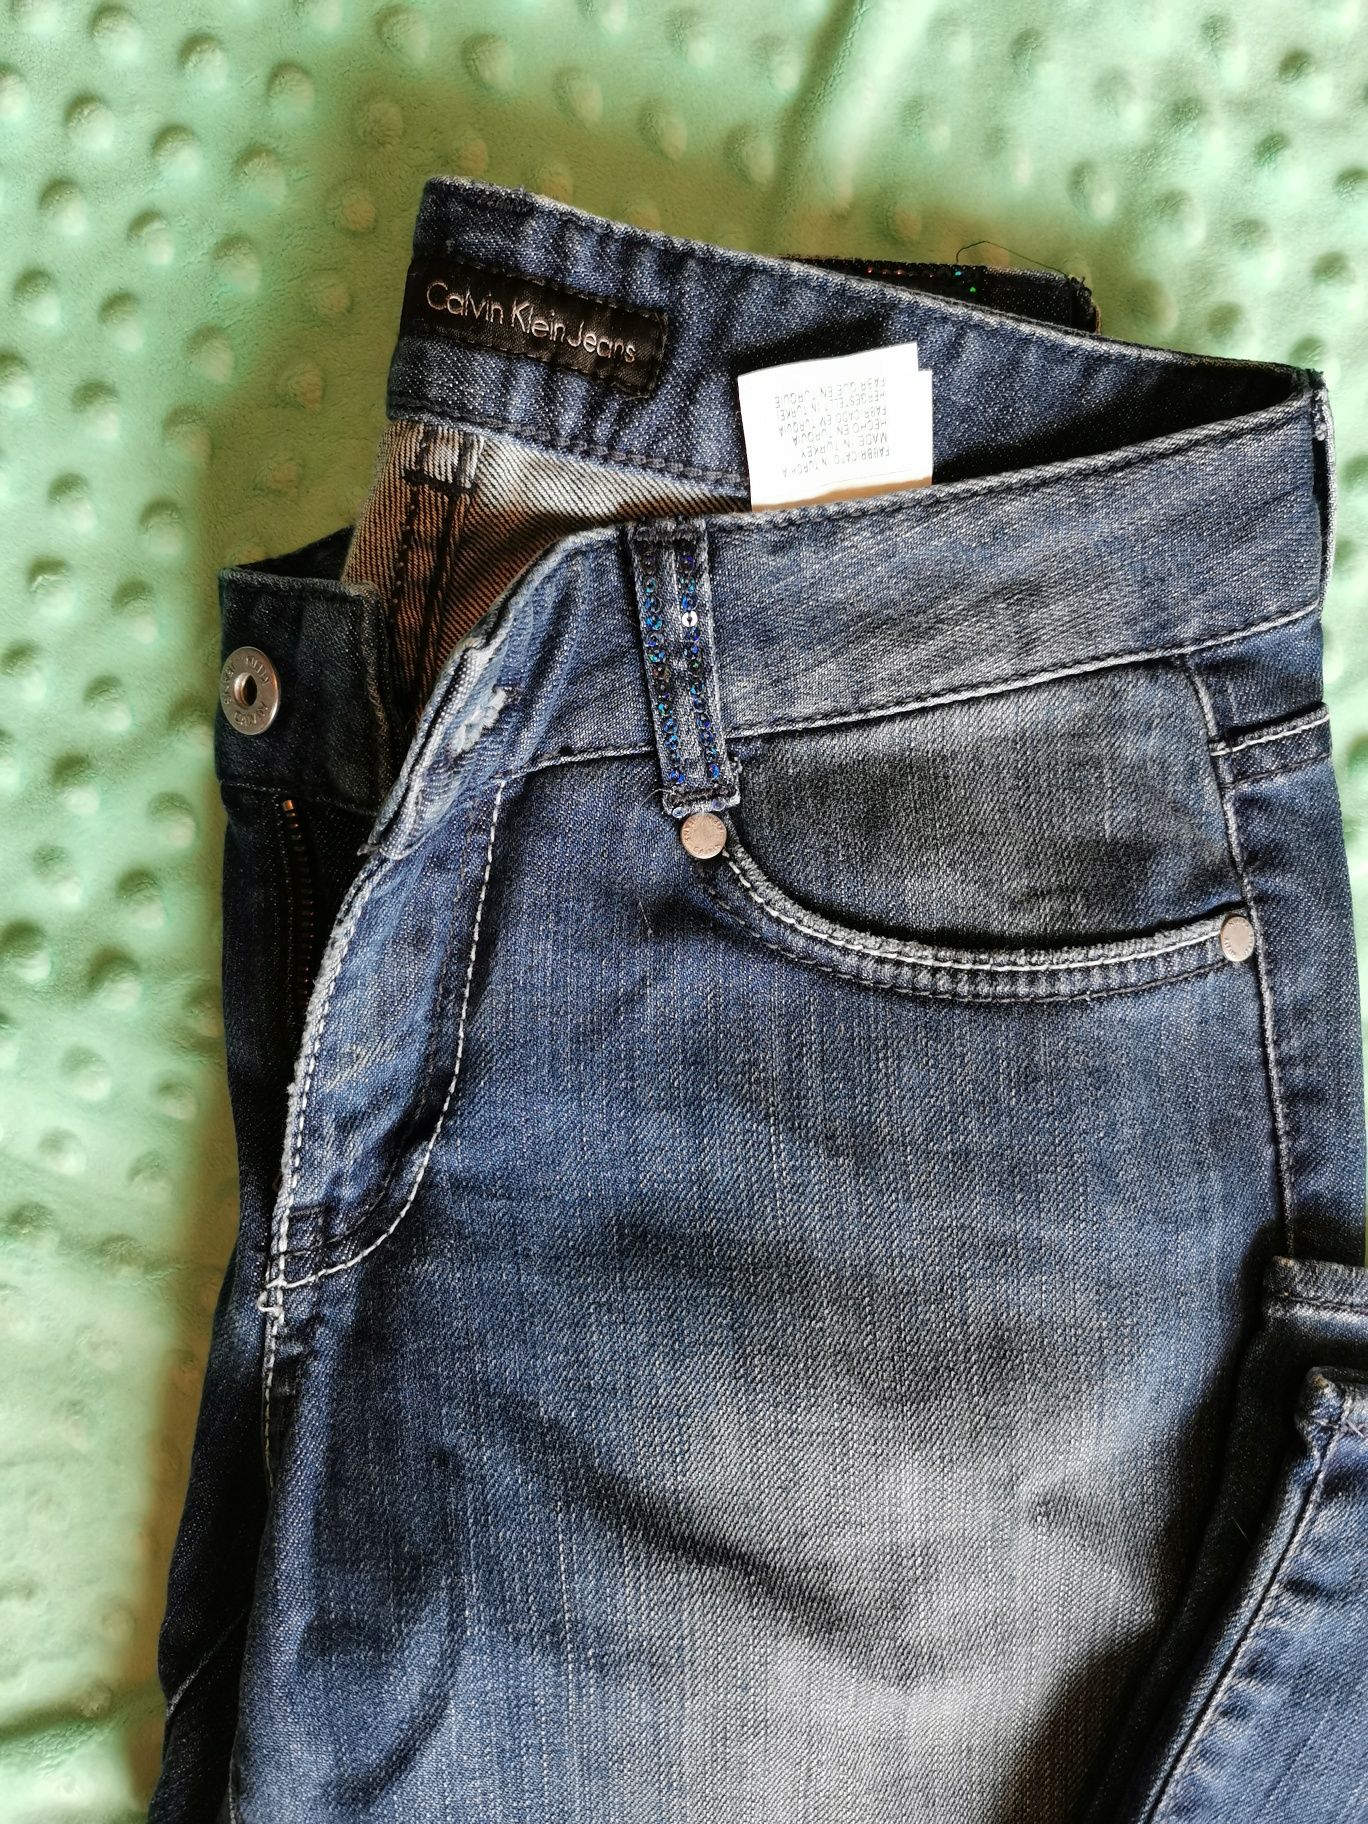 Damskie jeansy Calvin Klein spodnie jeansowe proste W27 s 36